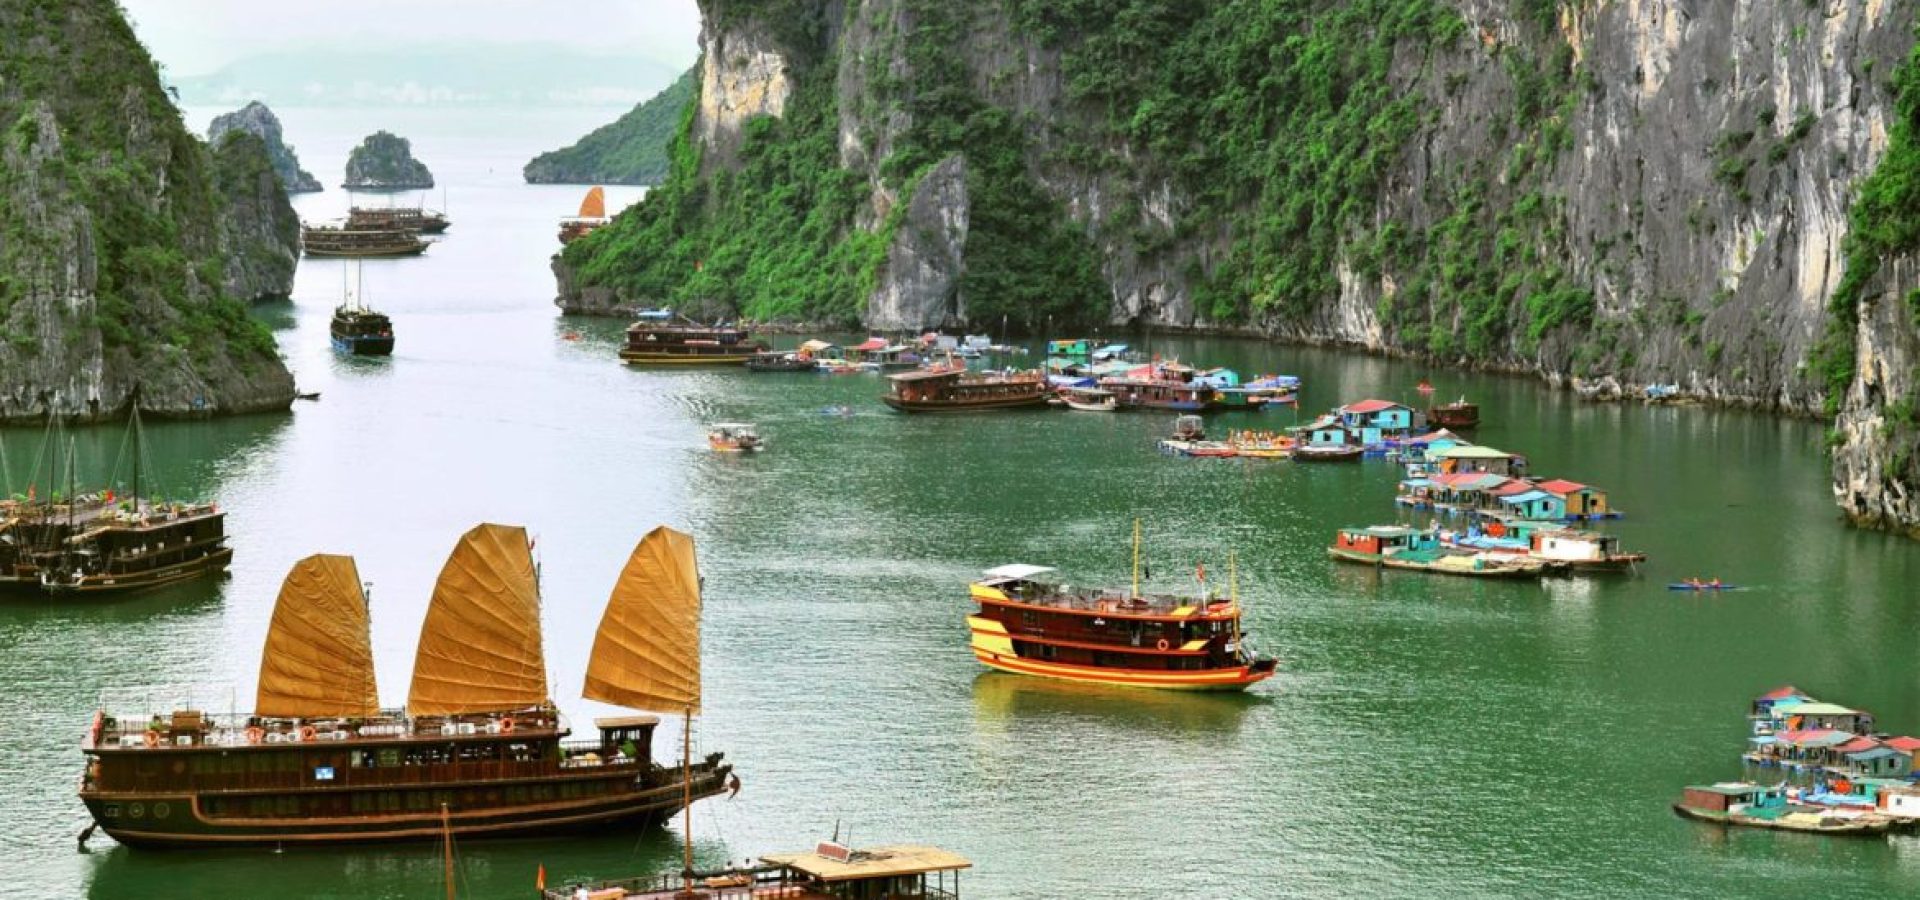 Vietnam and its economy